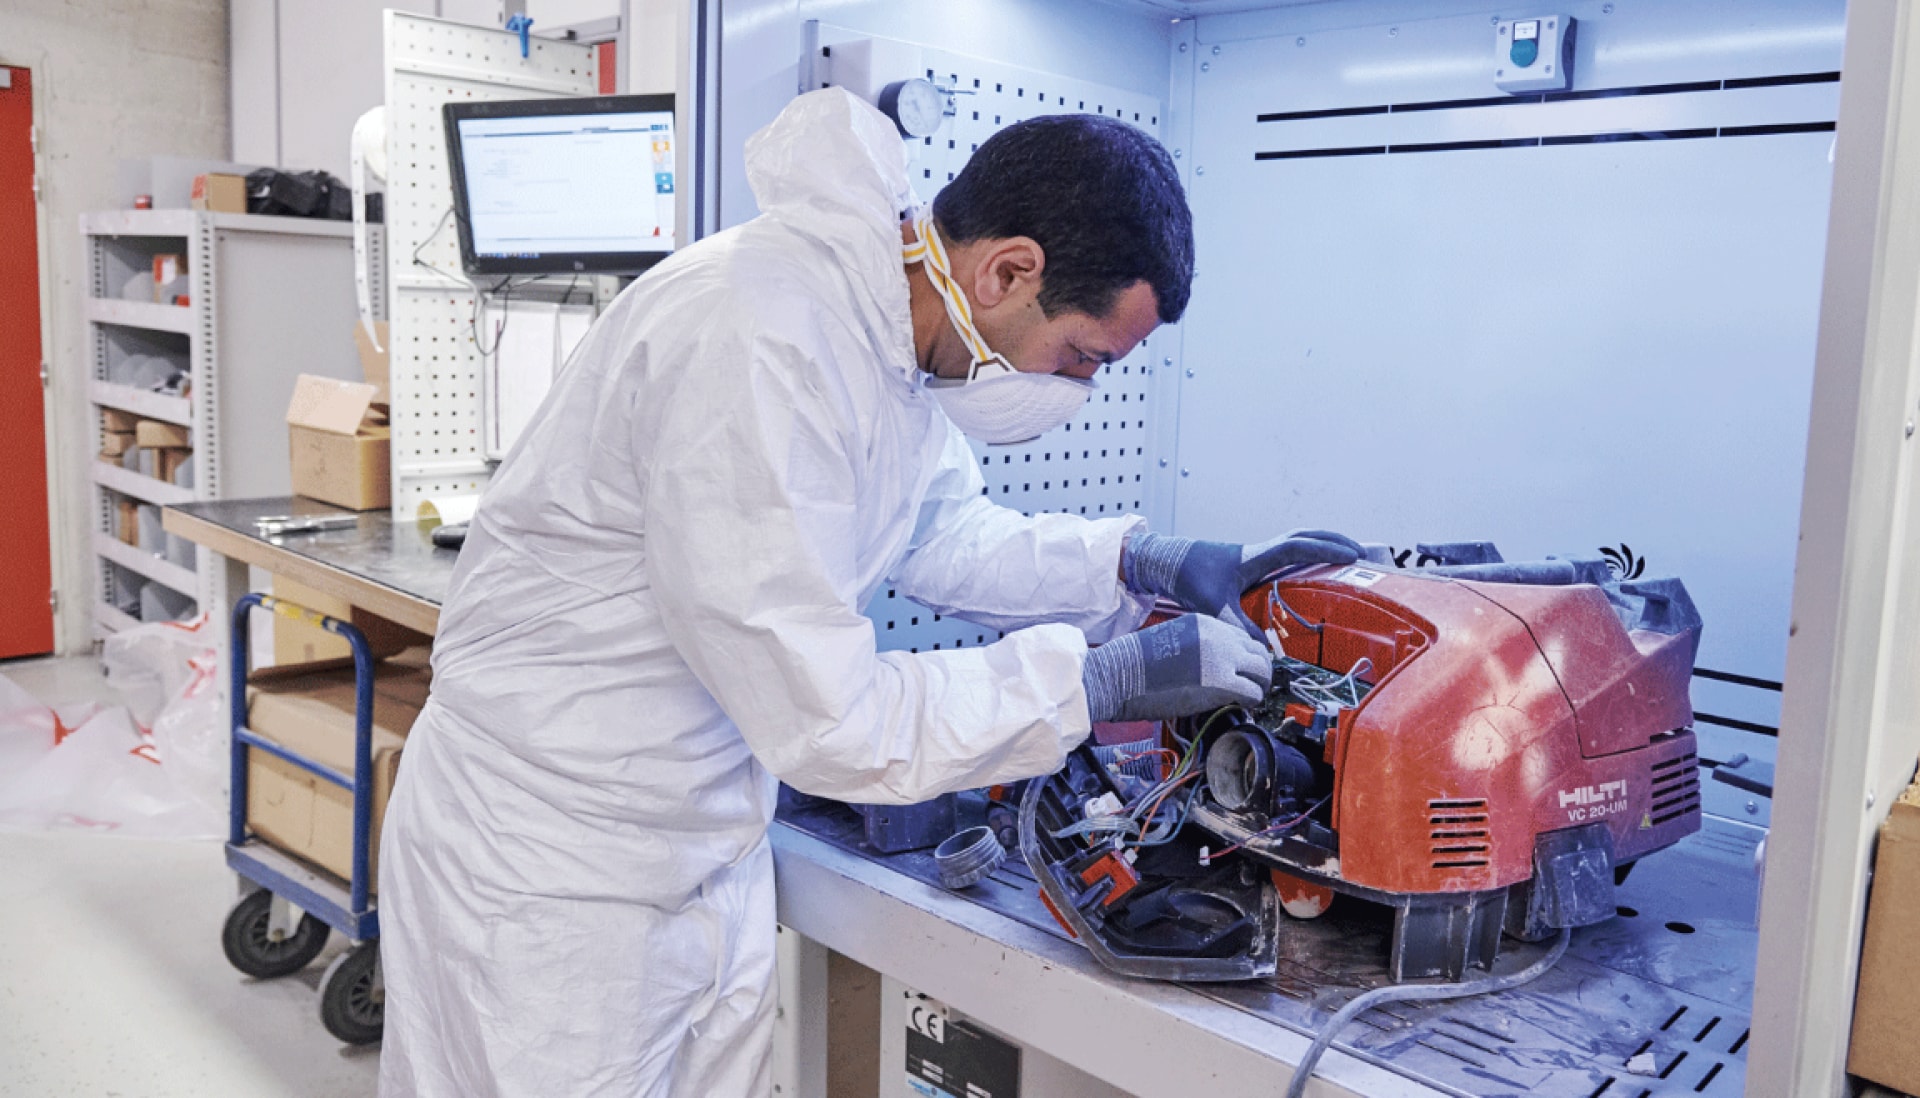 A Hilti service technician repairs a Hilti vacuum cleaner